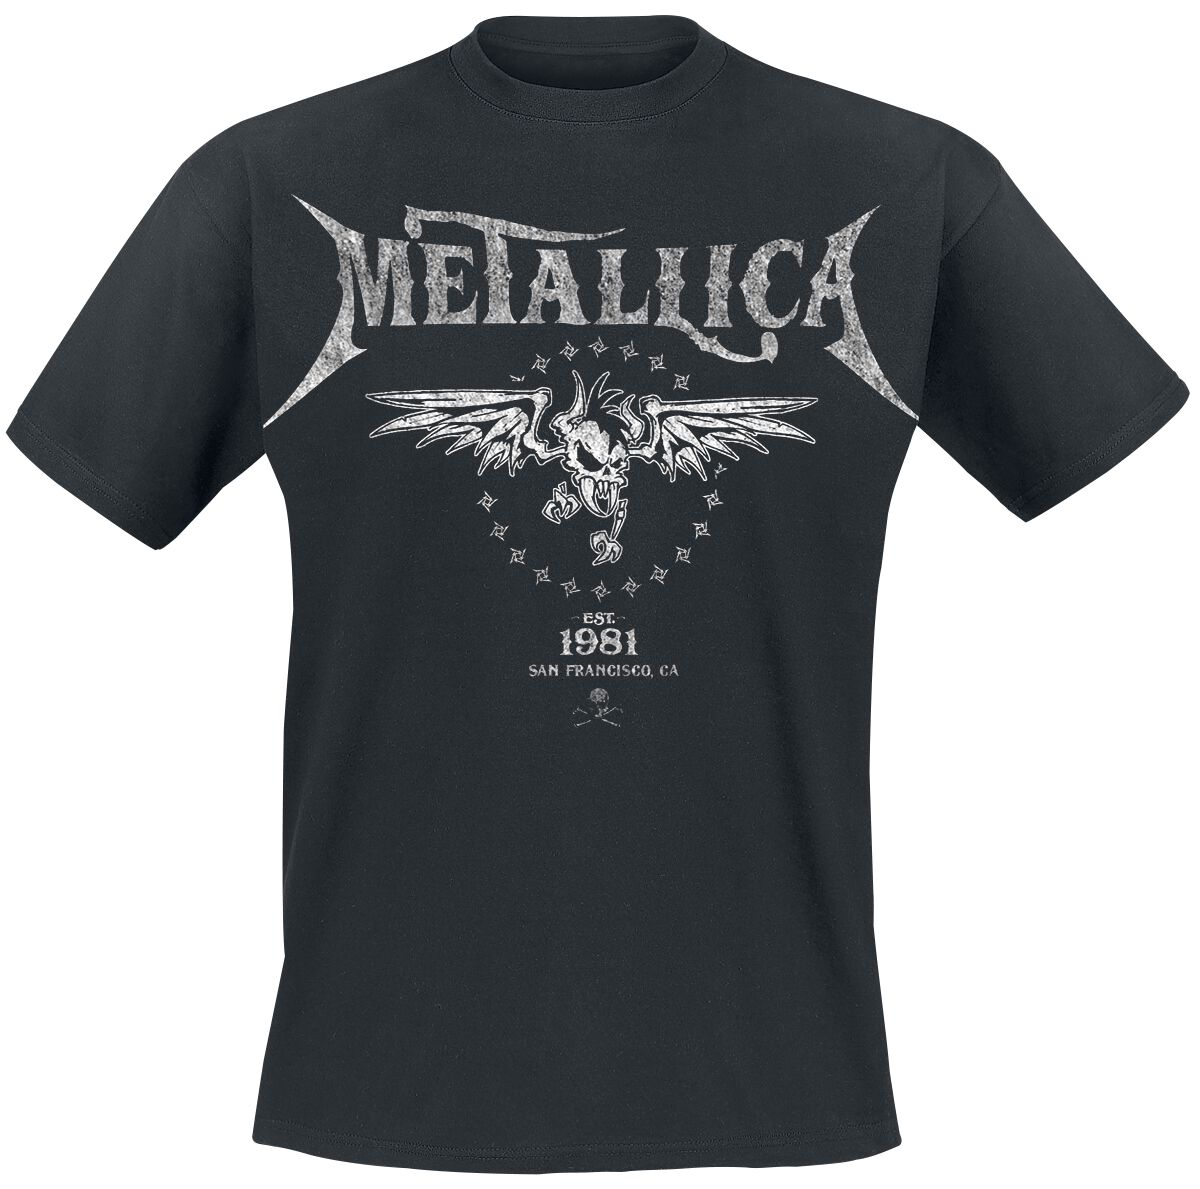 Metallica T-Shirt - Biker - S bis 5XL - für Männer - Größe 5XL - schwarz  - Lizenziertes Merchandise!